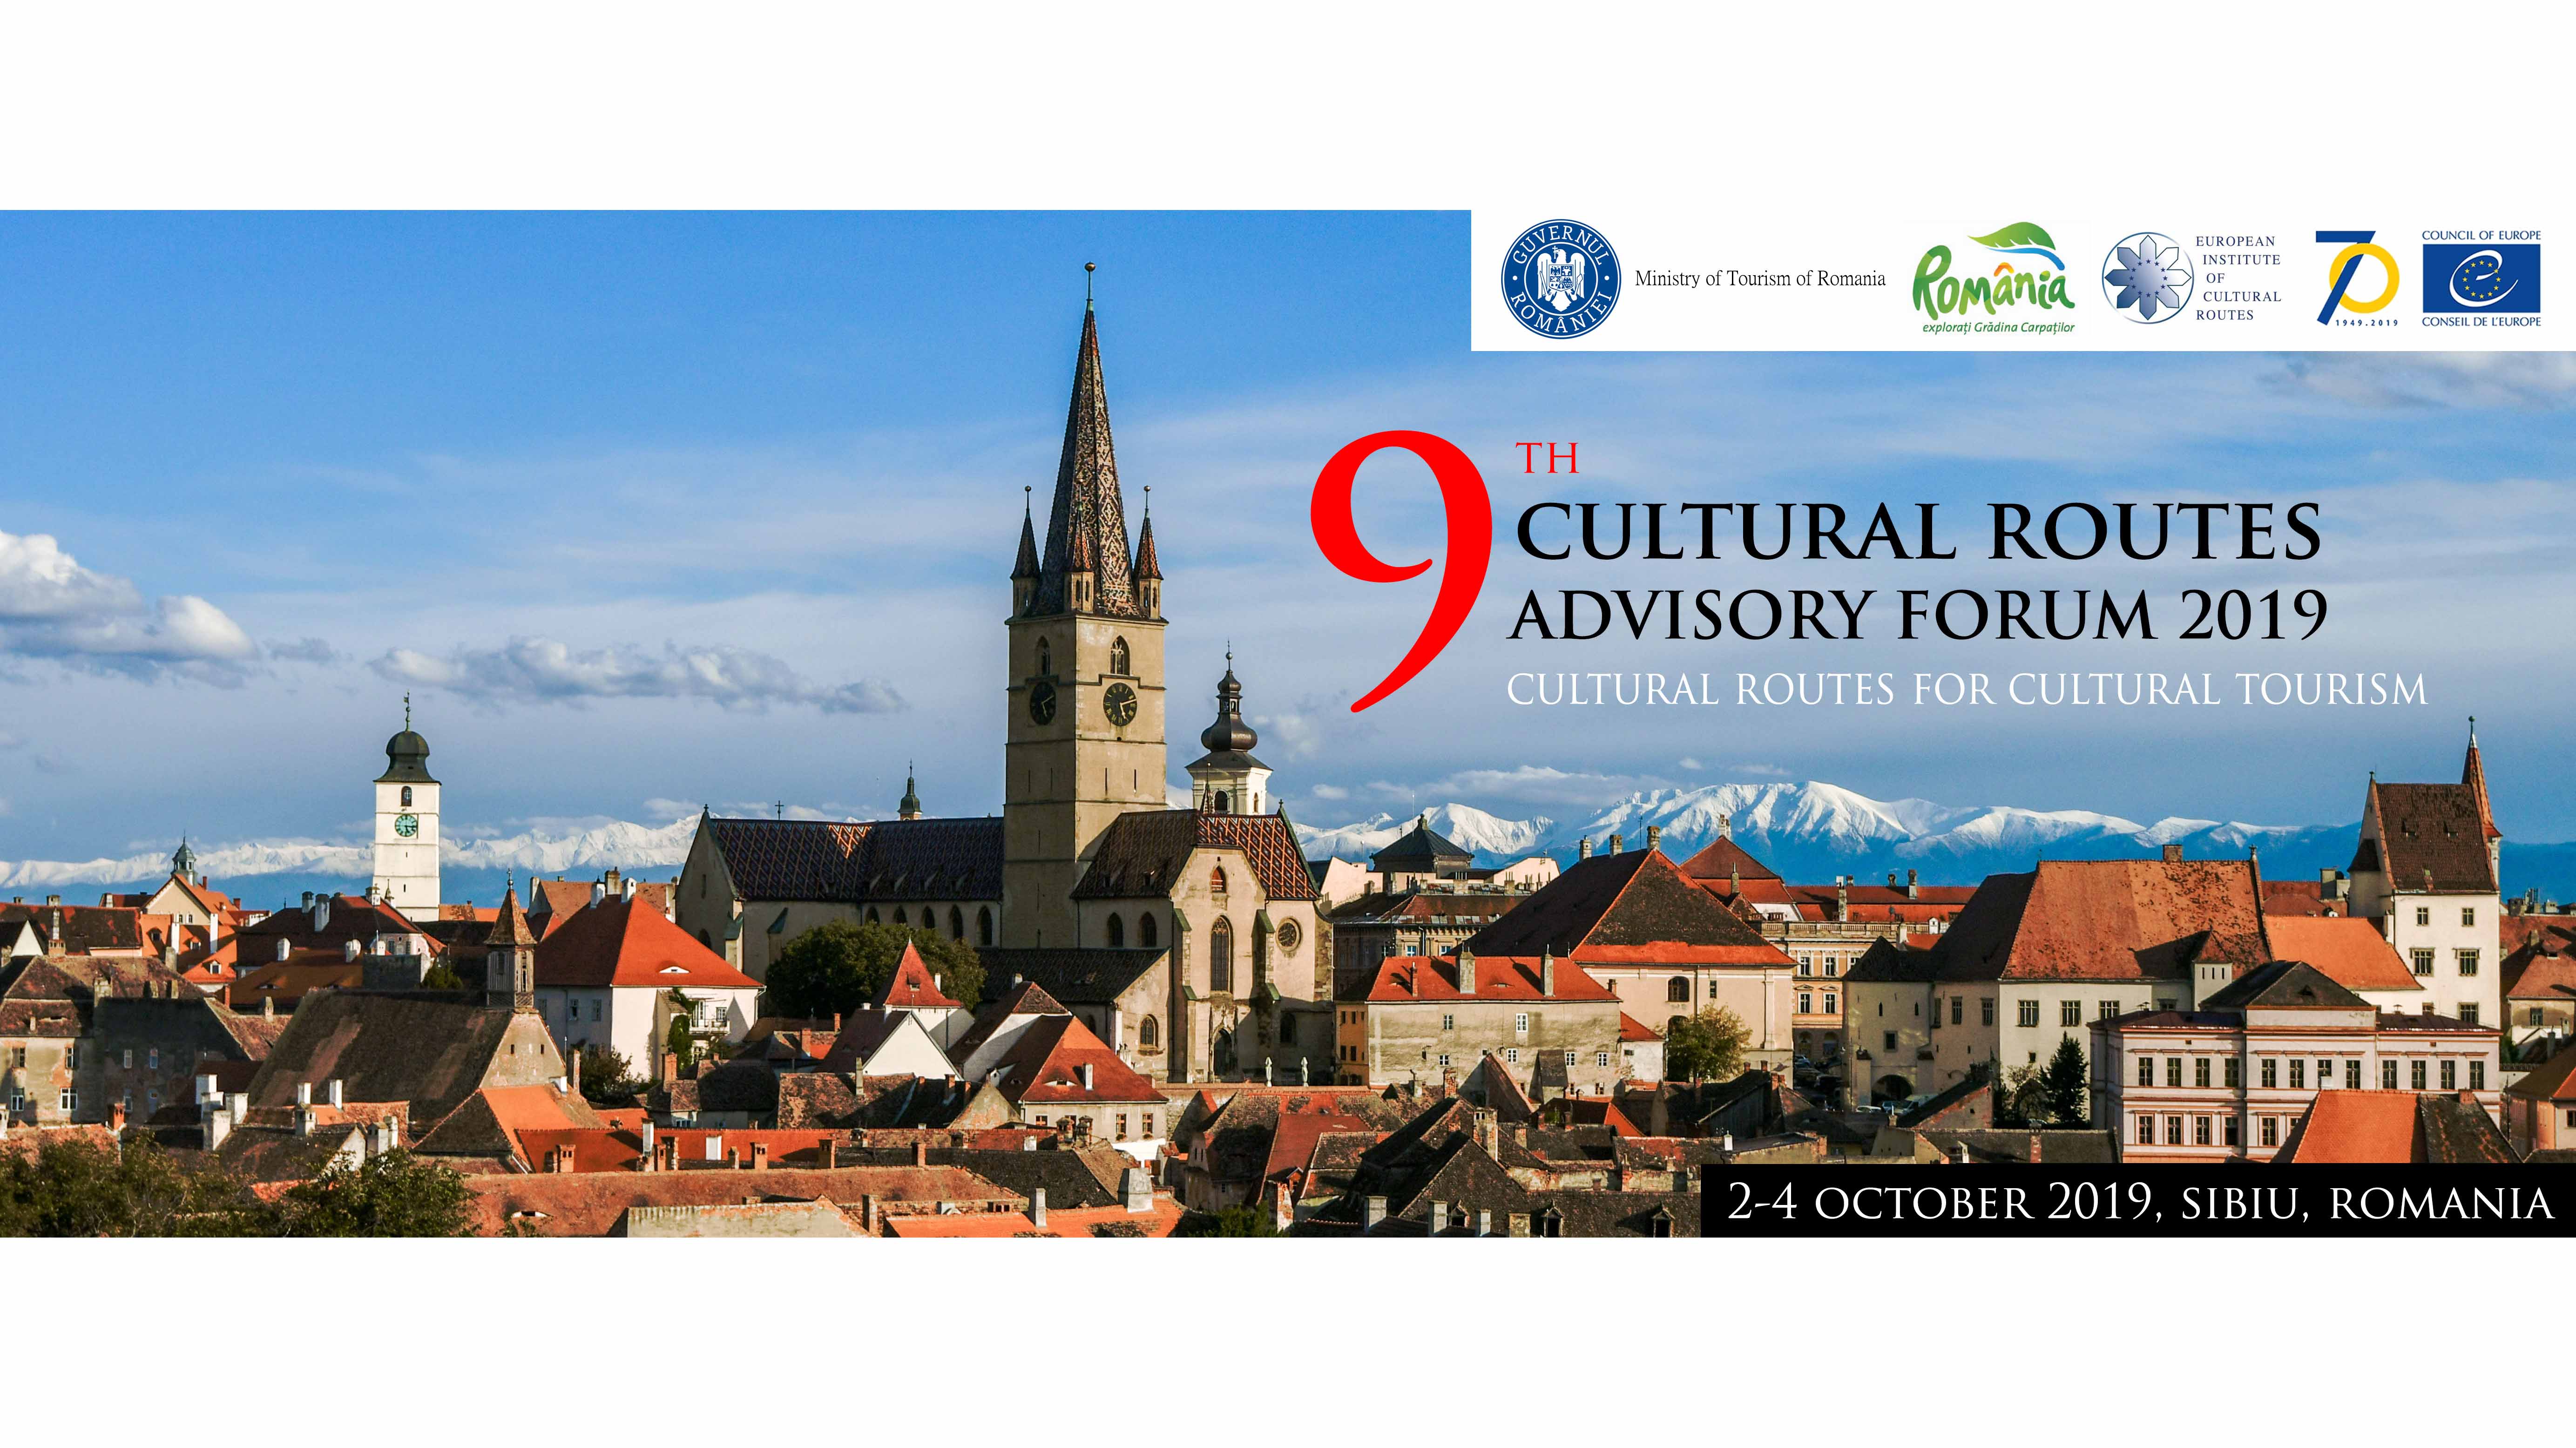 9° Foro Anual Consultivo sobre los Itinerarios Culturales del Consejo de Europa (Sibiu, Rumania)